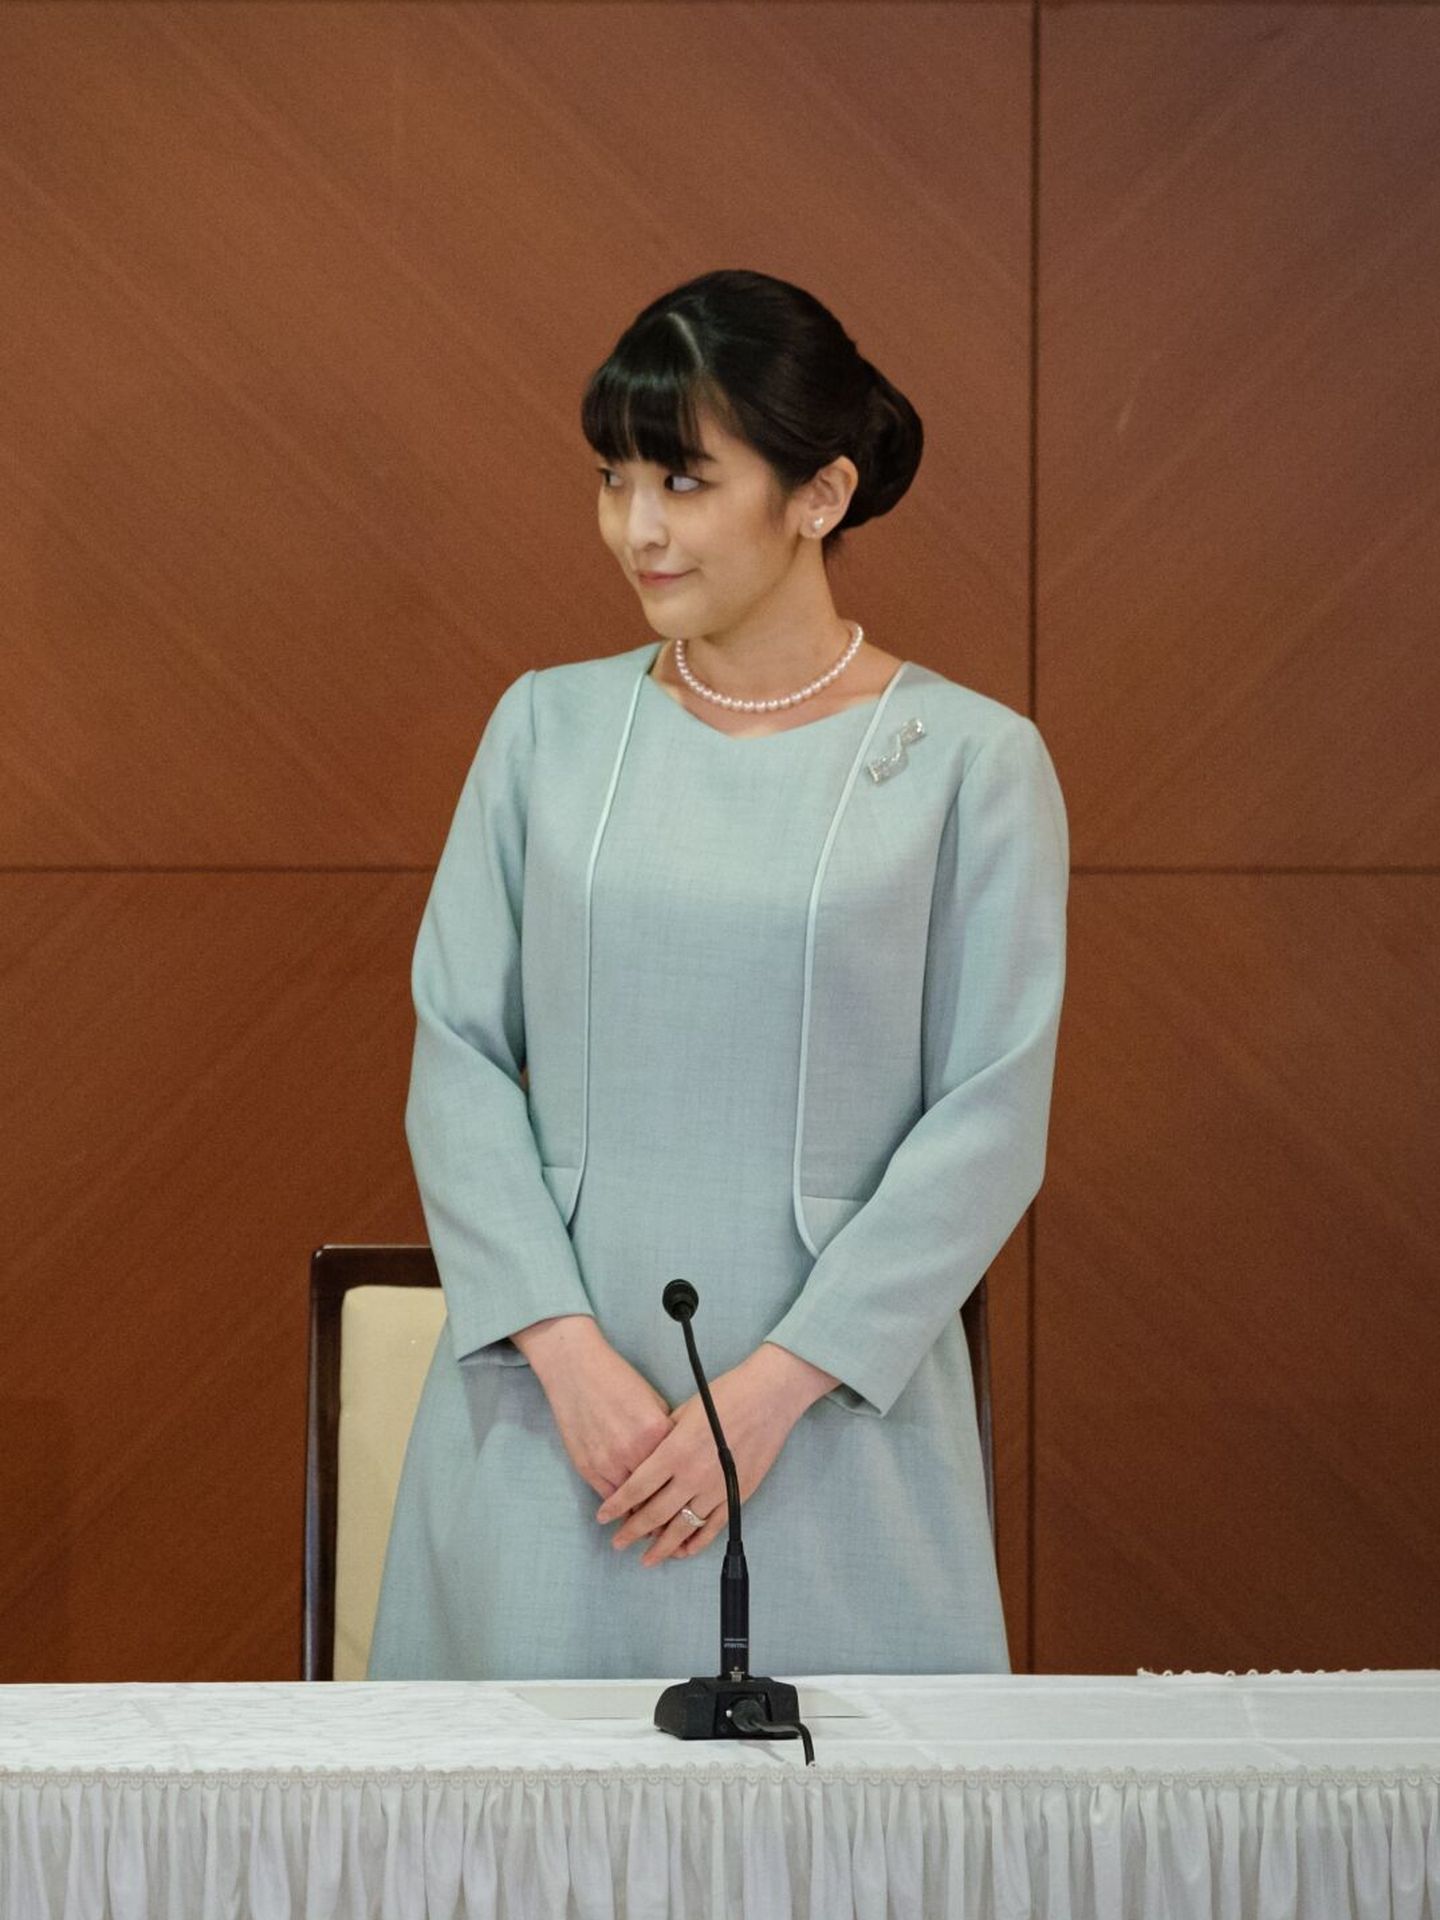 La princesa Mako de Japón, en una conferencia en Tokio. (EFE/Nicolas Datiche)